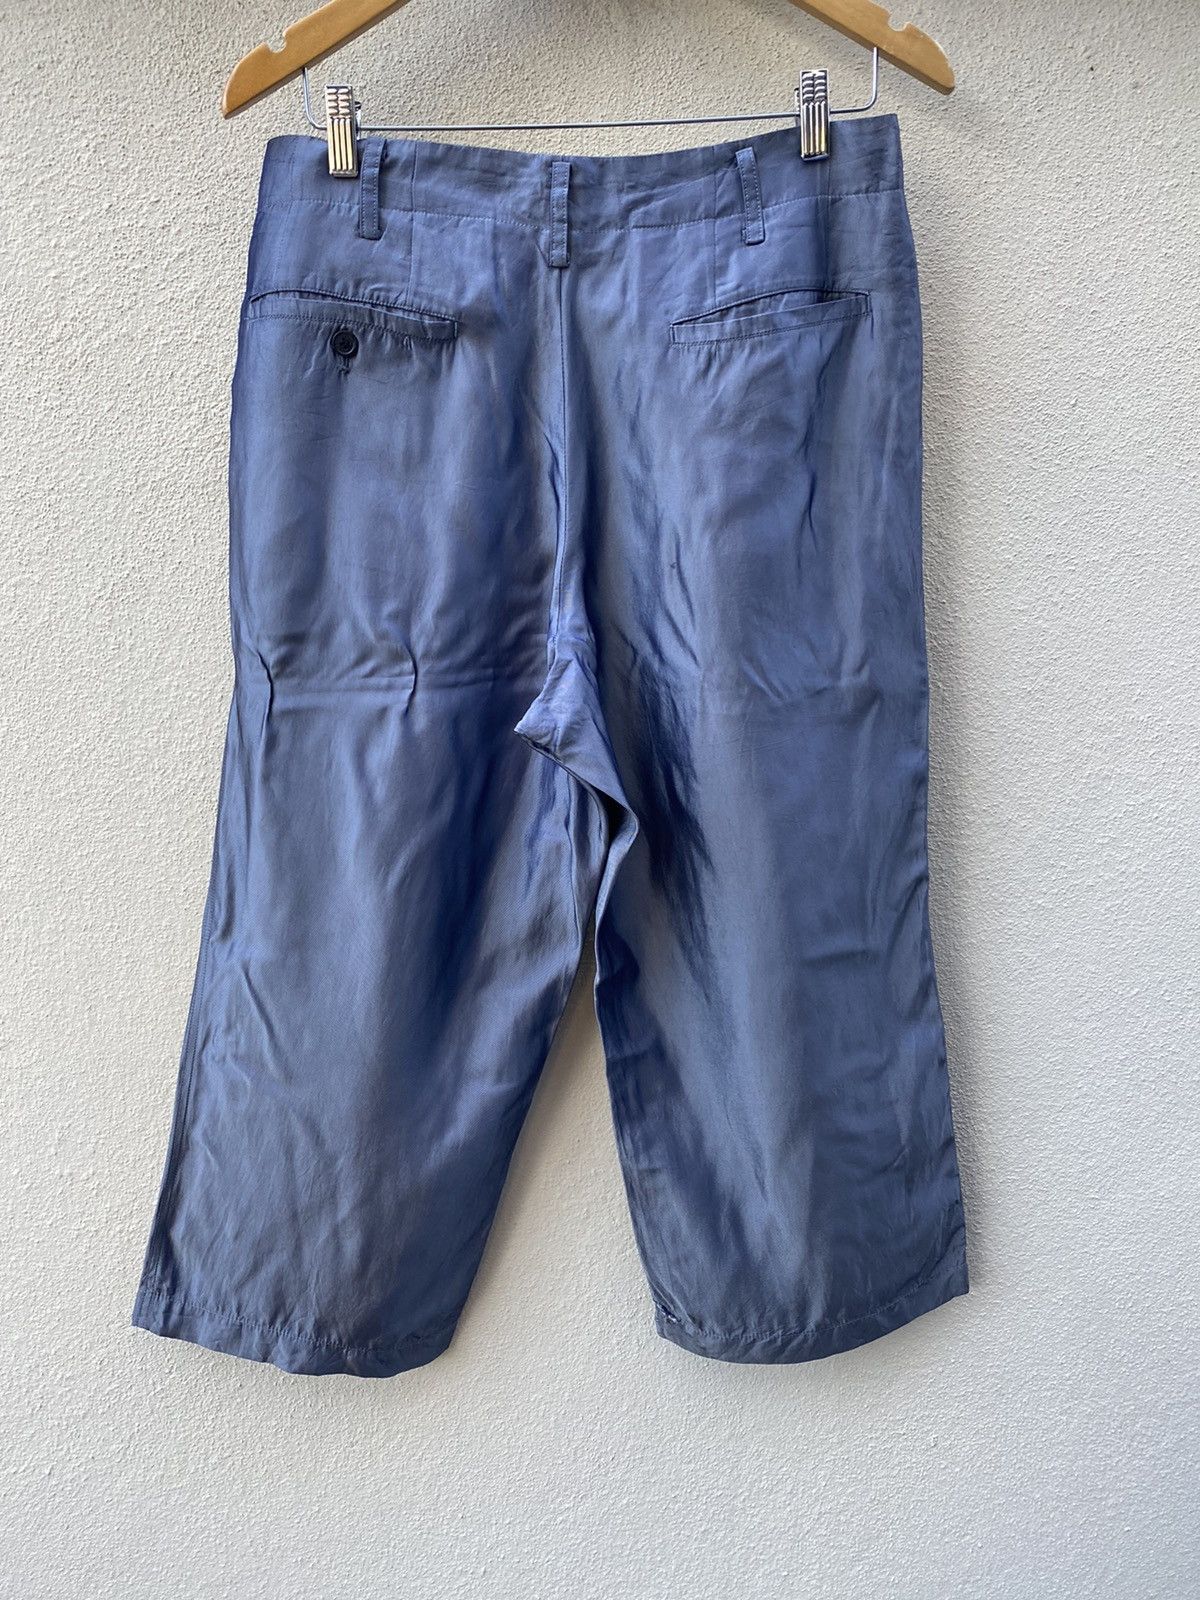 Y's Yohji Yamamoto Cropped Pants - 5